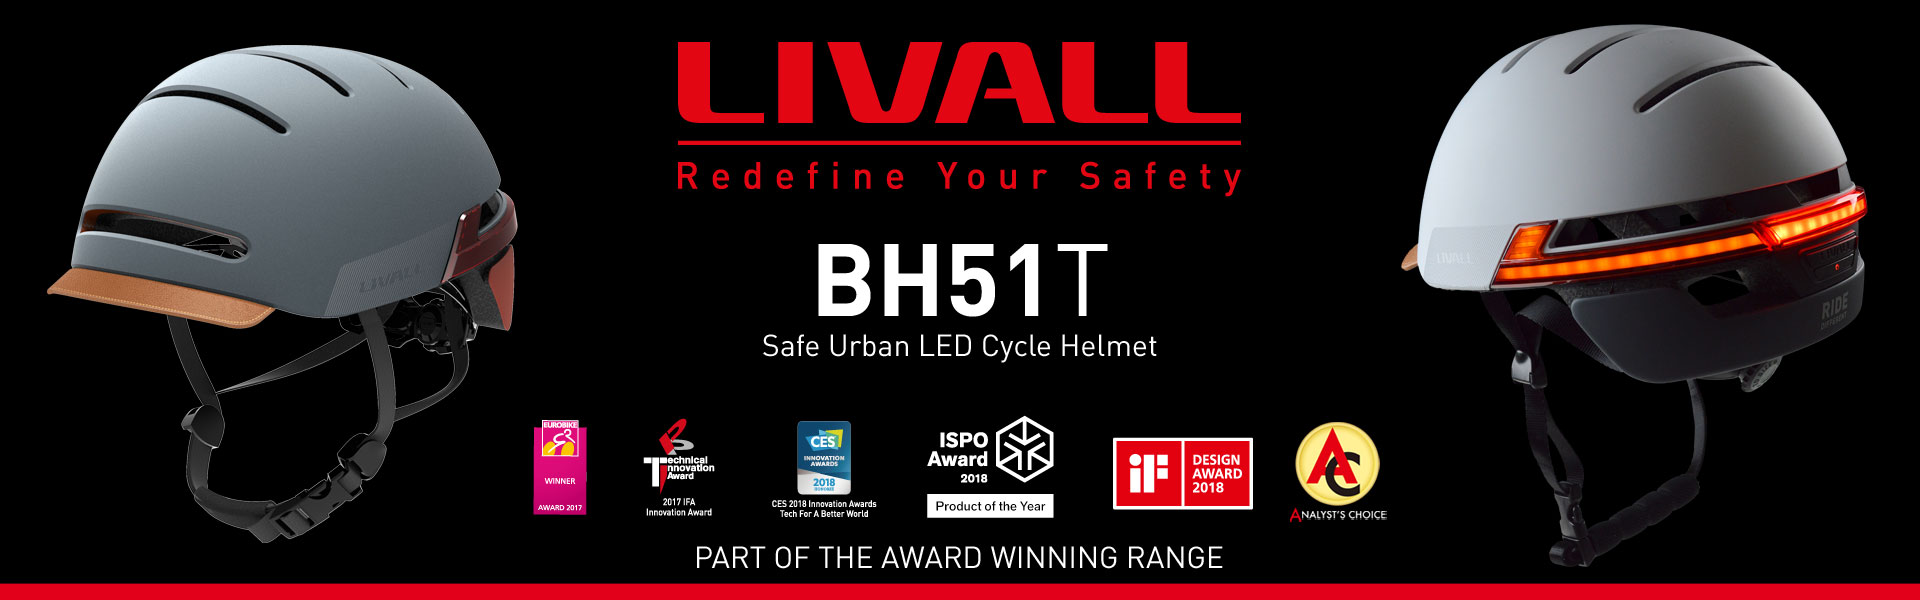 LIVALL BH51T Smart Helmet Banner